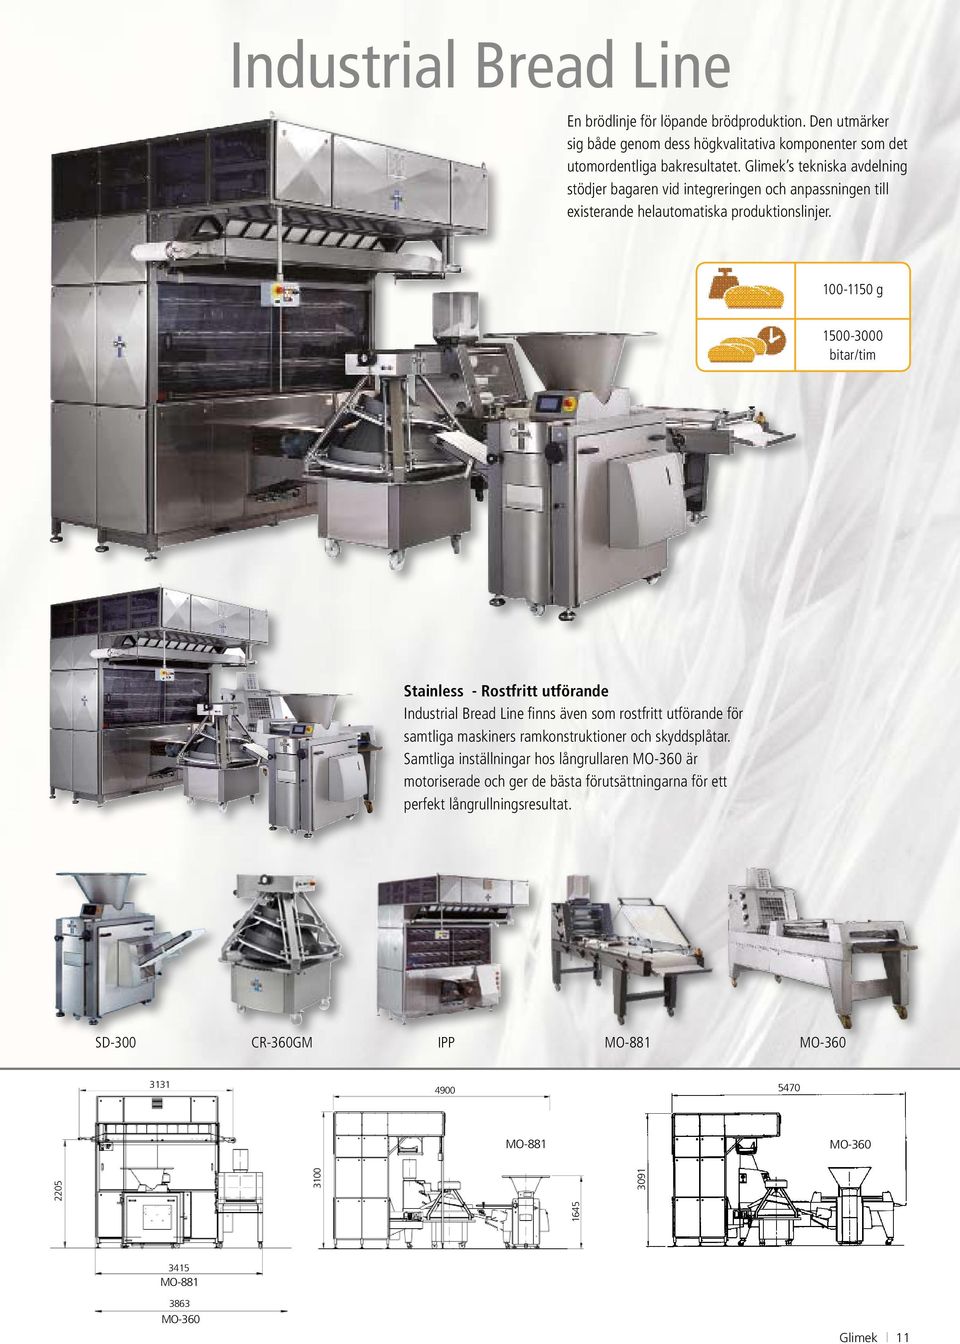 100-1150 g 1500-3000 Stainess - Rostfritt utförande Industria Bread Line finns även som rostfritt utförande för samtiga maskiners ramkonstruktioner och skyddspåtar.